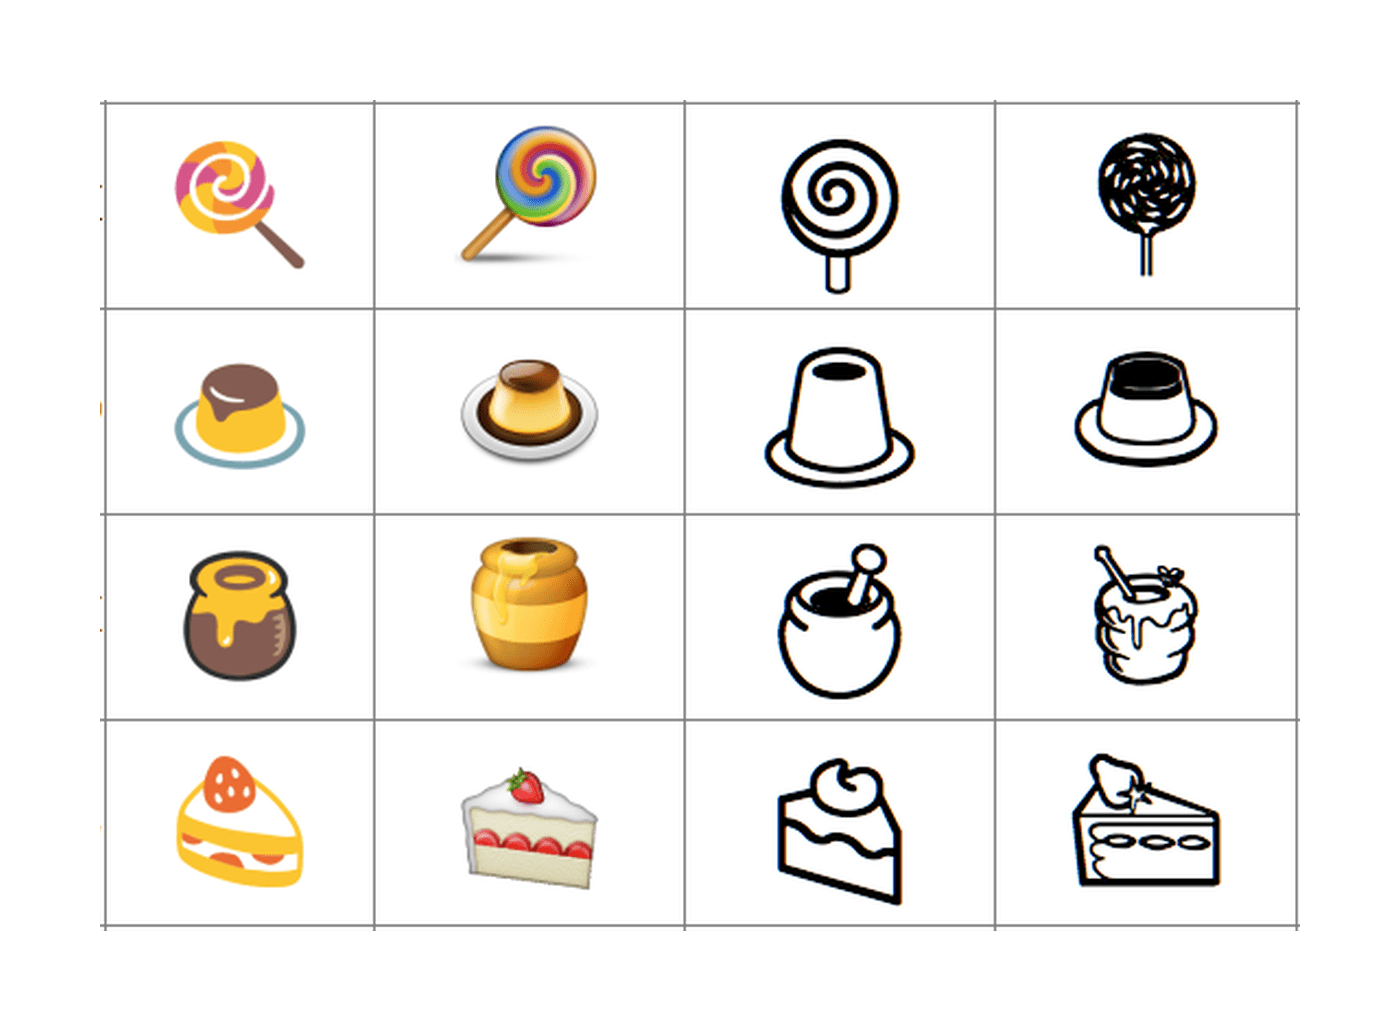  Um conjunto de 16 emojis diferentes 